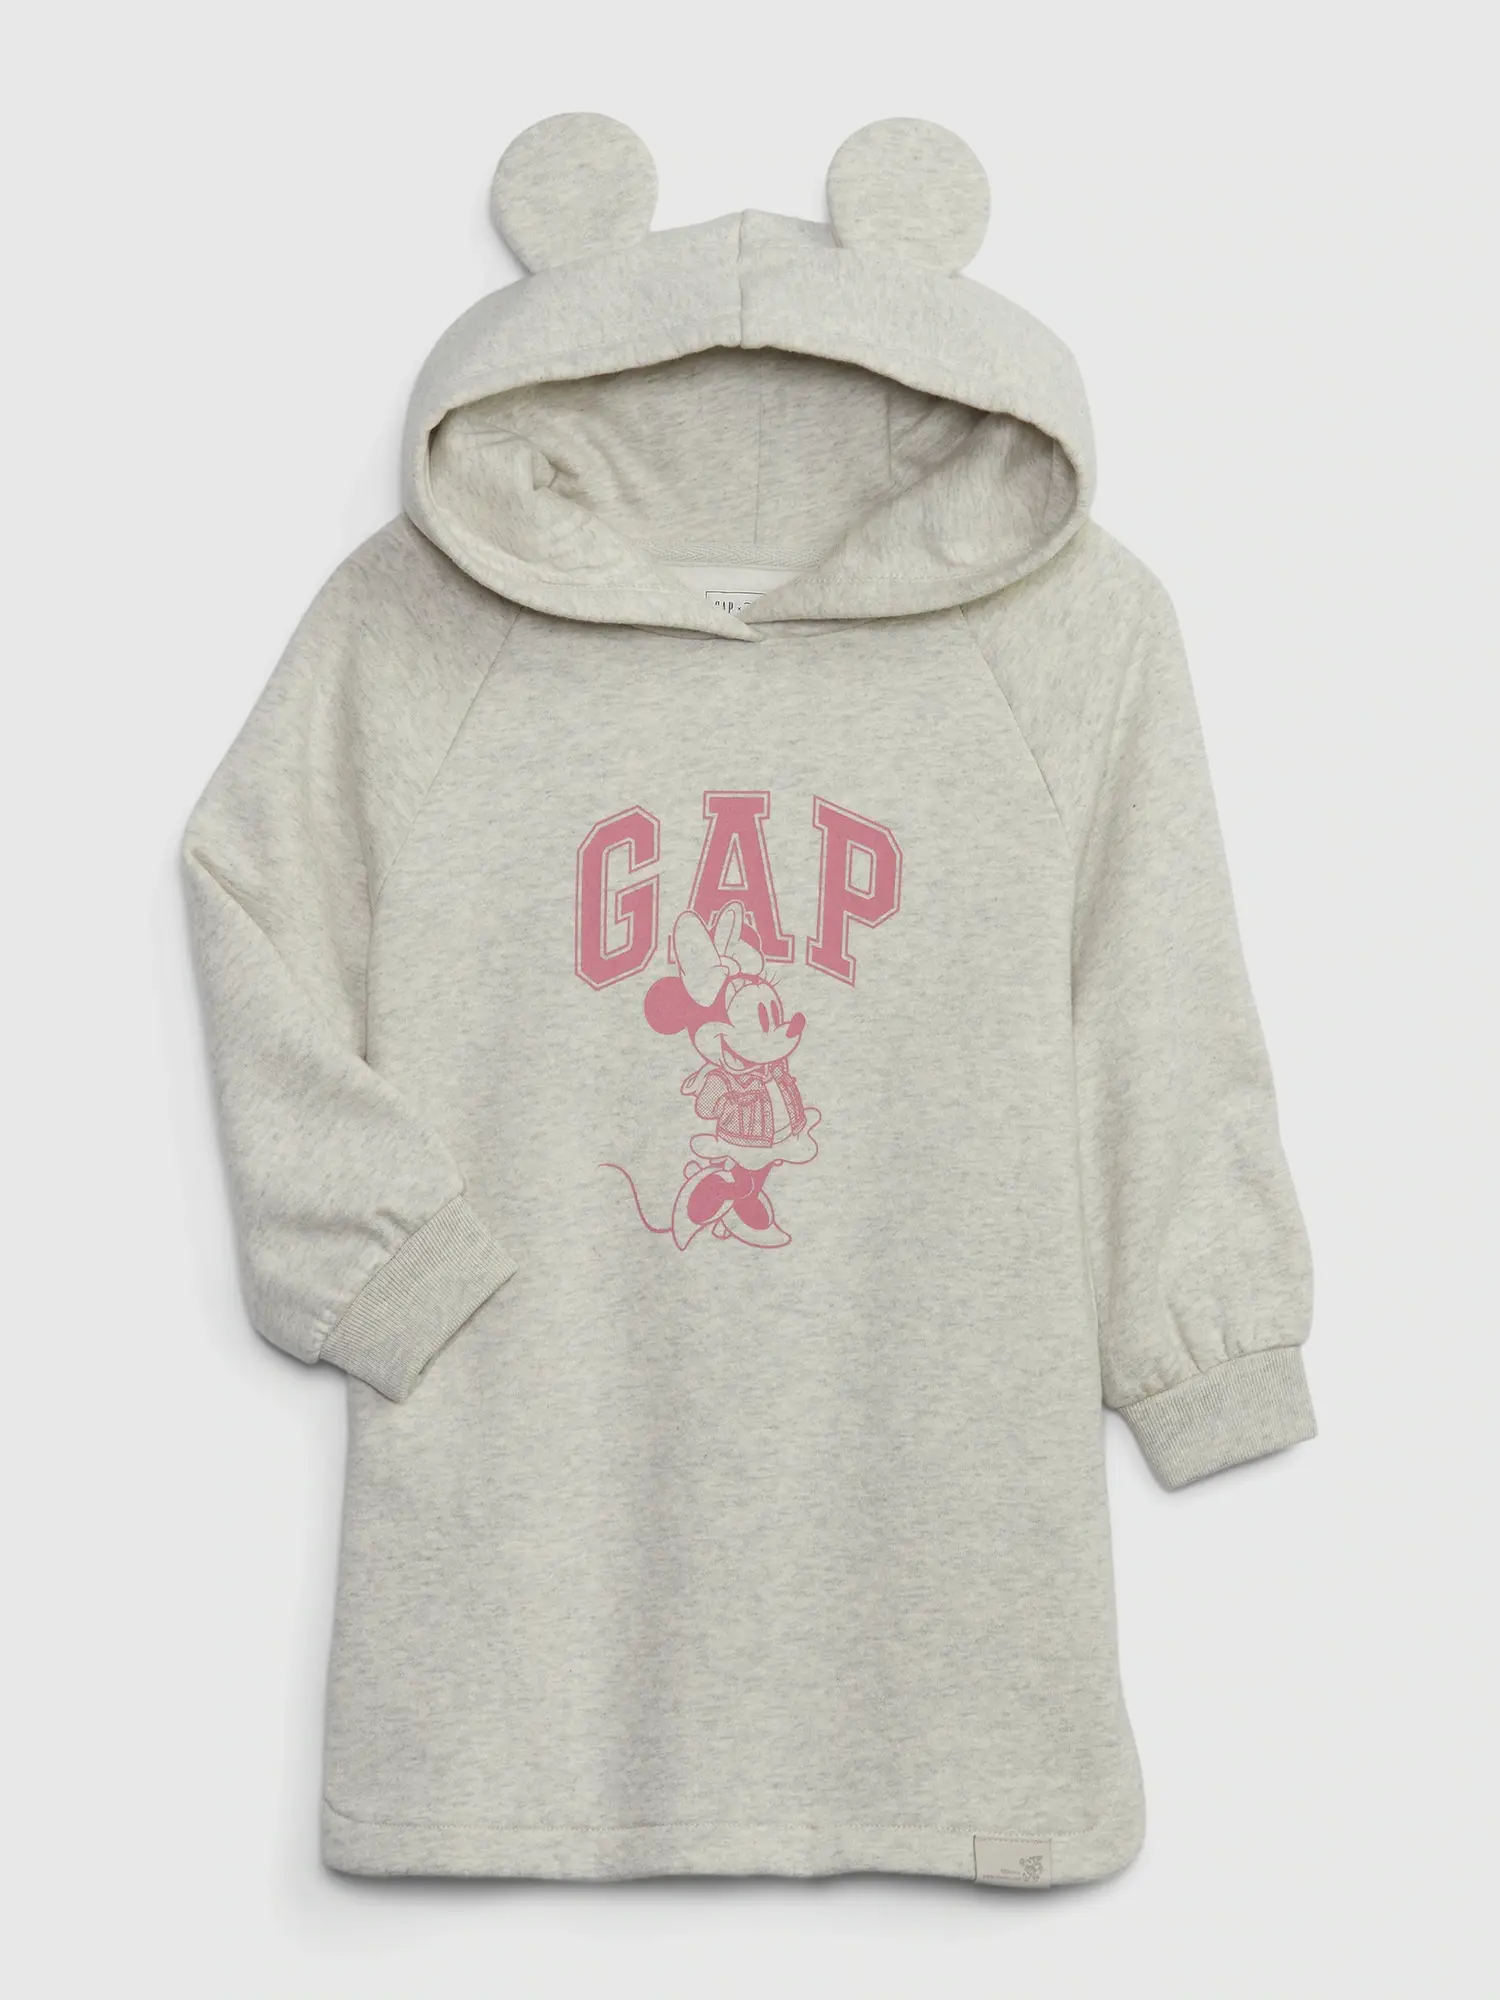 Gap Toddler Sweatshirt Dress gray. 1